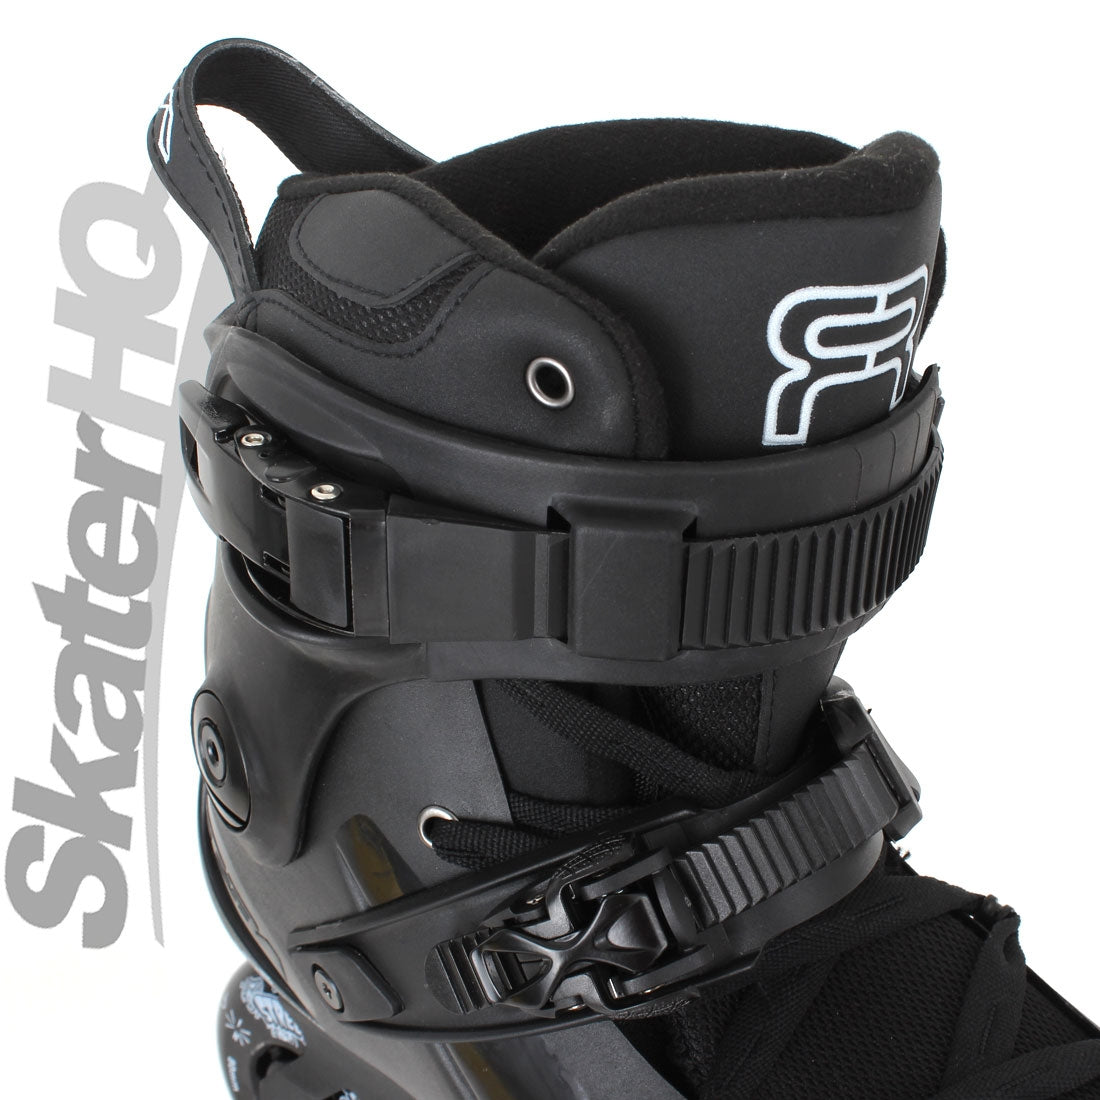 SEBA FR1 80 Black 13US/EU47 Inline Rec Skates